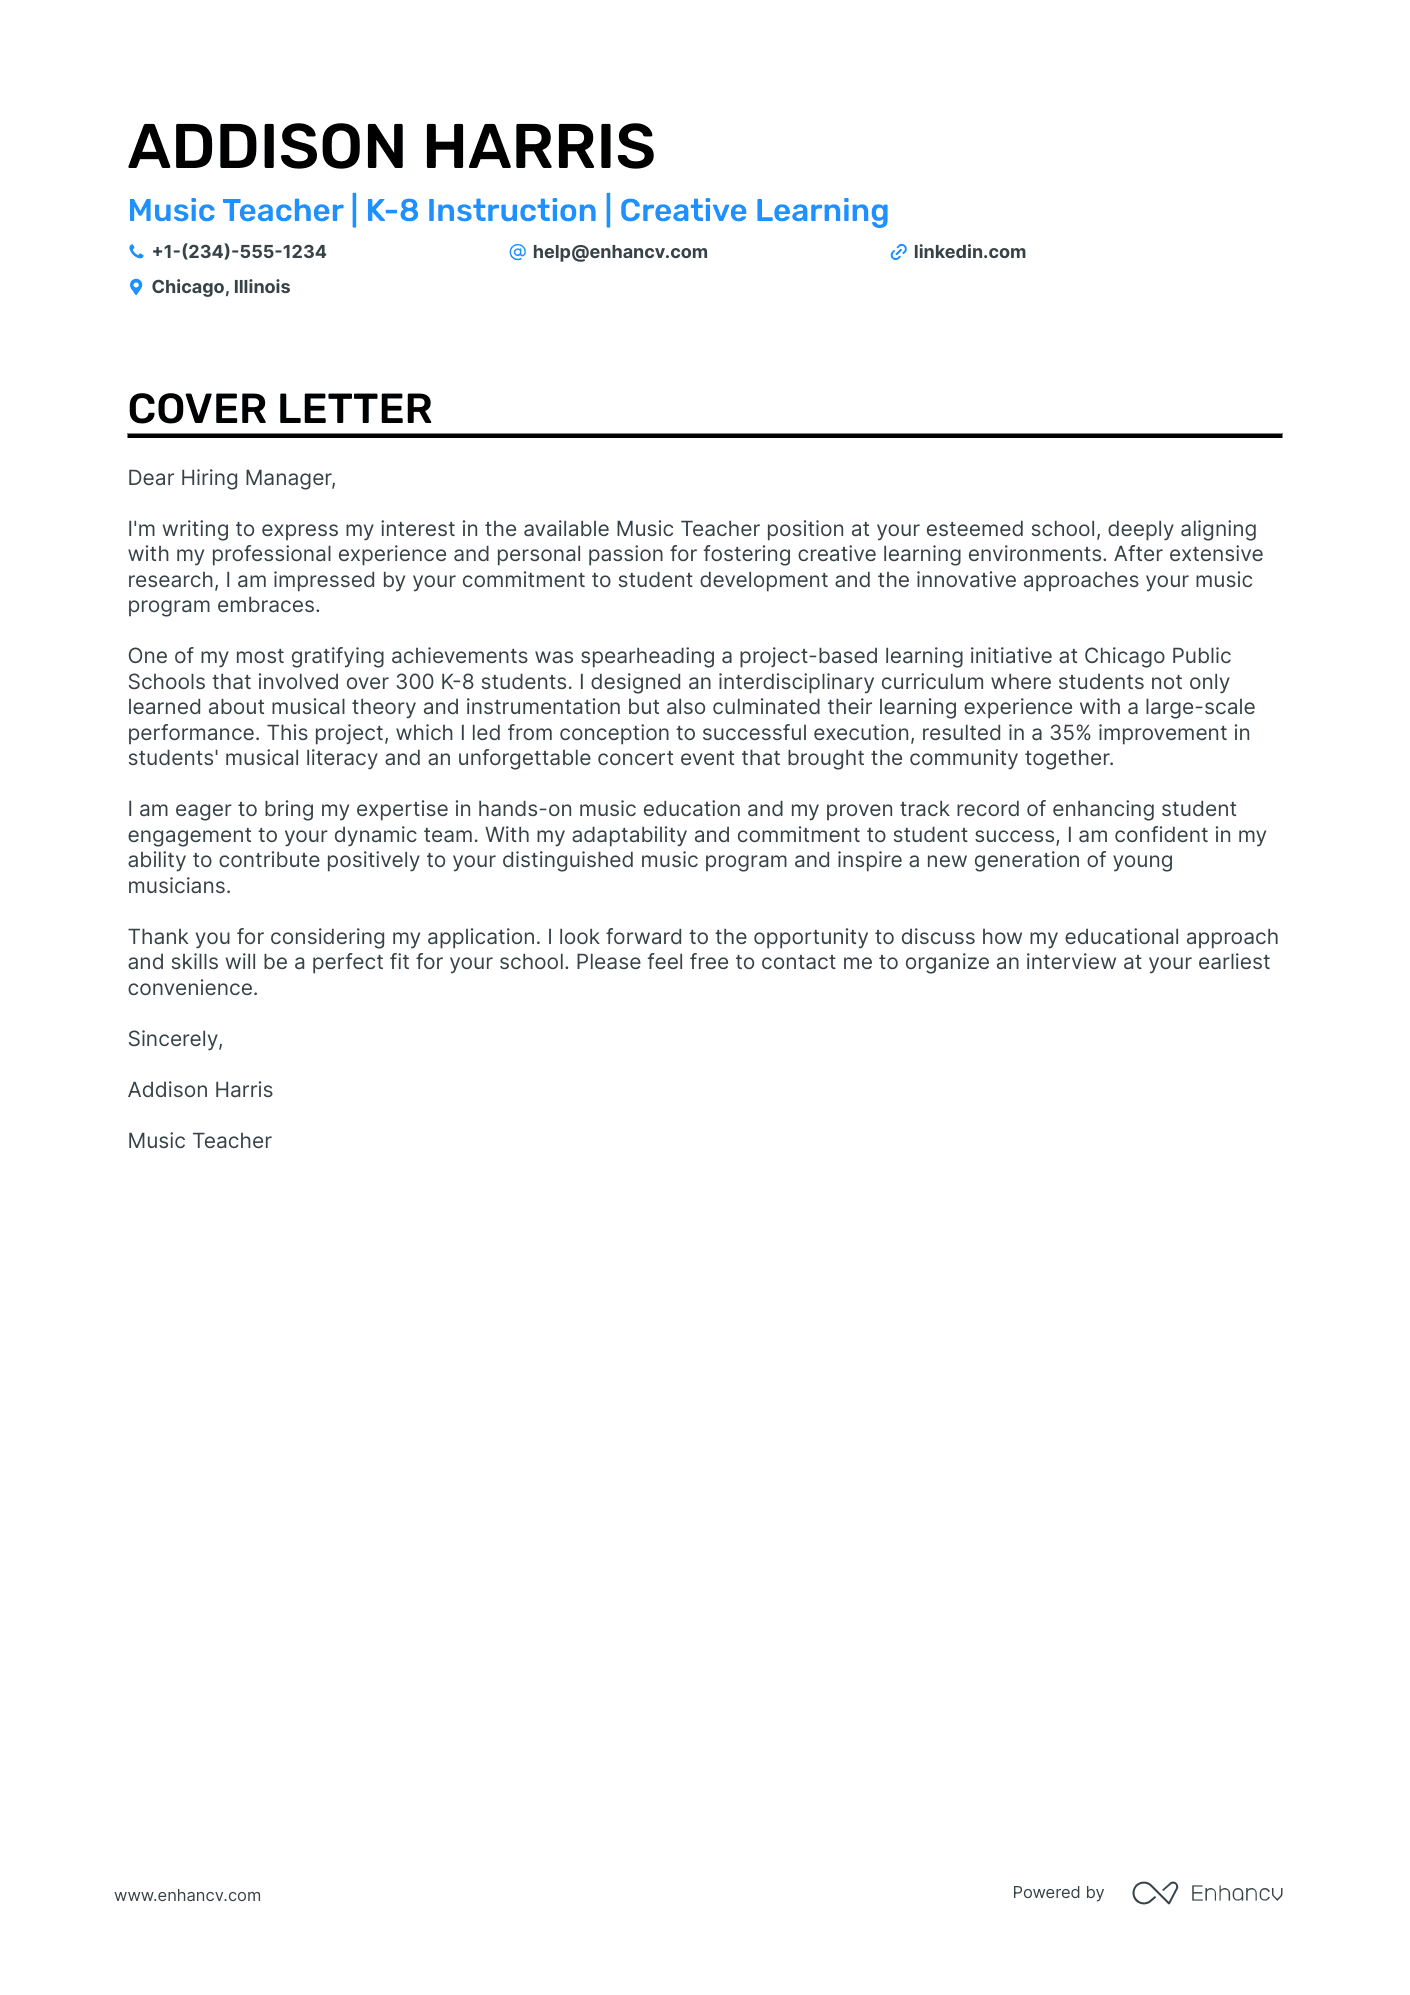 cover letter example elementary teacher